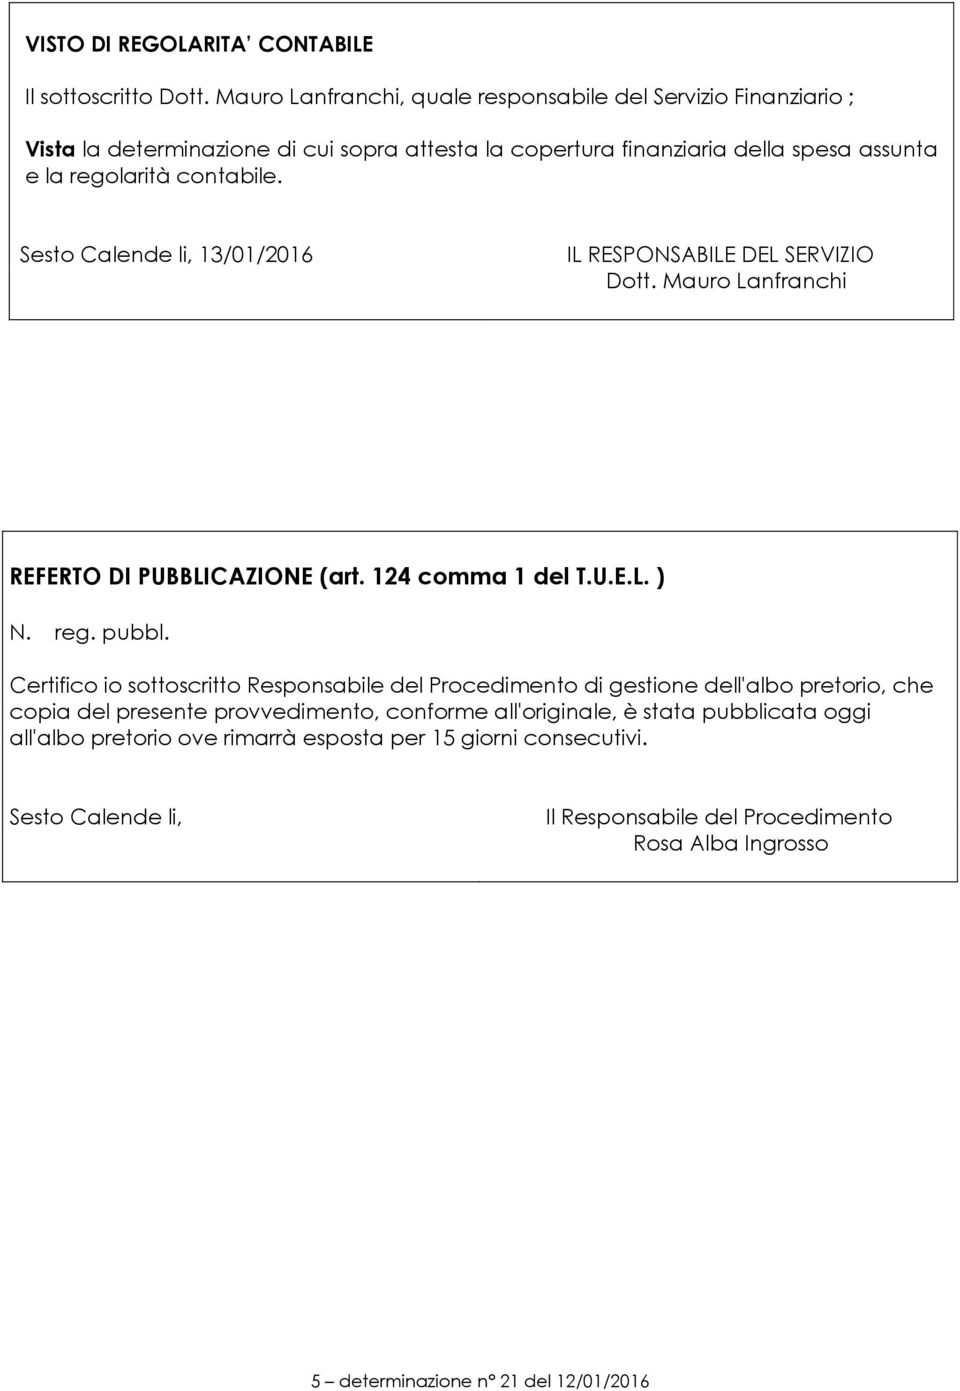 Sesto Calende li, 13/01/2016 IL RESPONSABILE DEL SERVIZIO Dott. Mauro Lanfranchi REFERTO DI PUBBLICAZIONE (art. 124 comma 1 del T.U.E.L. ) N. reg. pubbl.